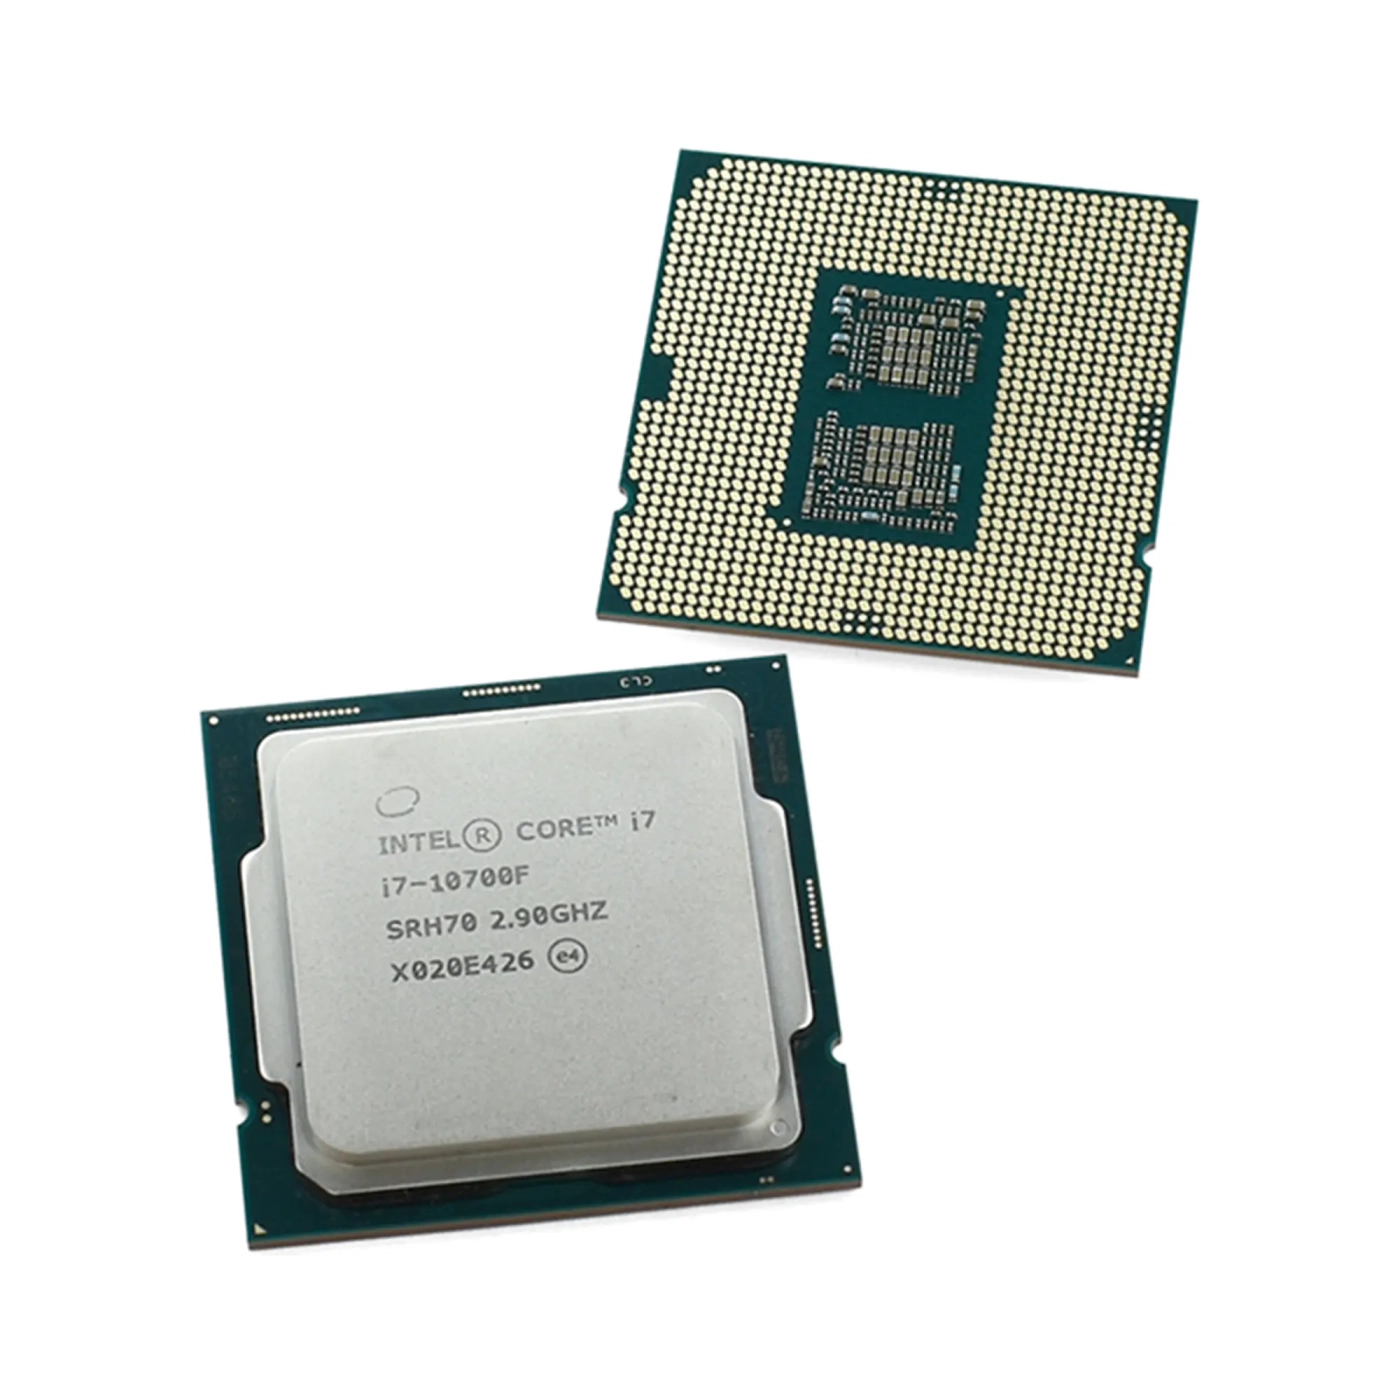 Купить Процессор INTEL Core i7-10700F (2.9GHz, 16MB, LGA1200) TRAY - фото 2